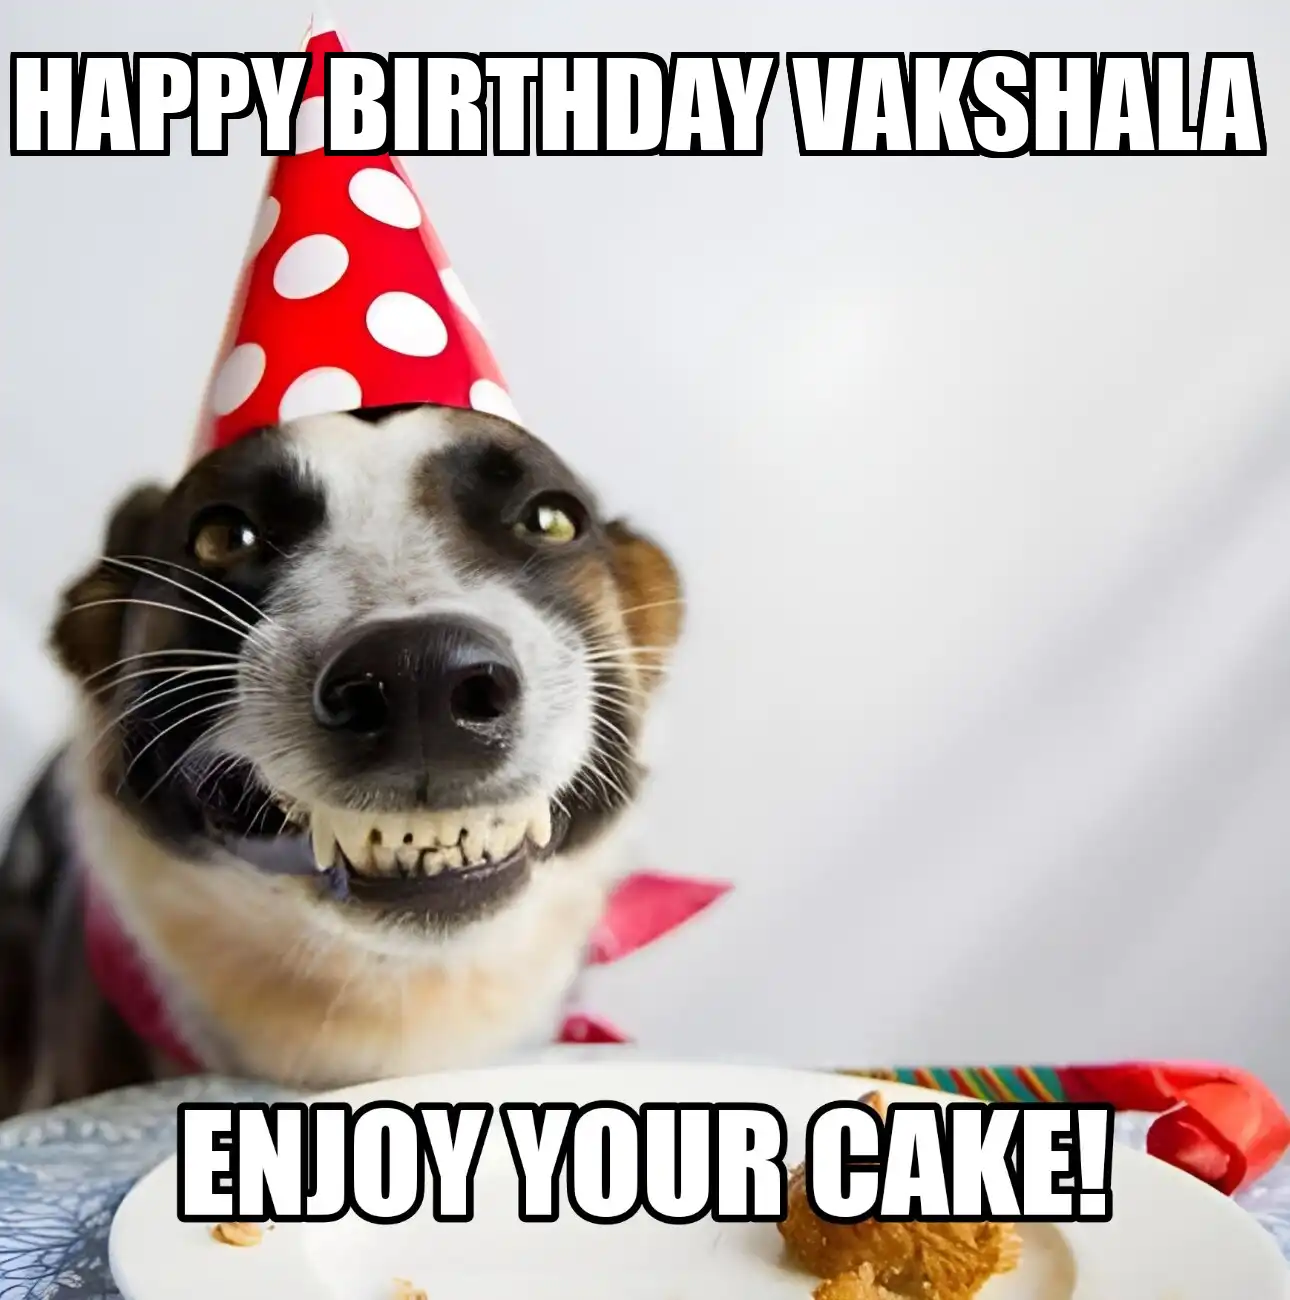 Happy Birthday Vakshala Enjoy Your Cake Dog Meme